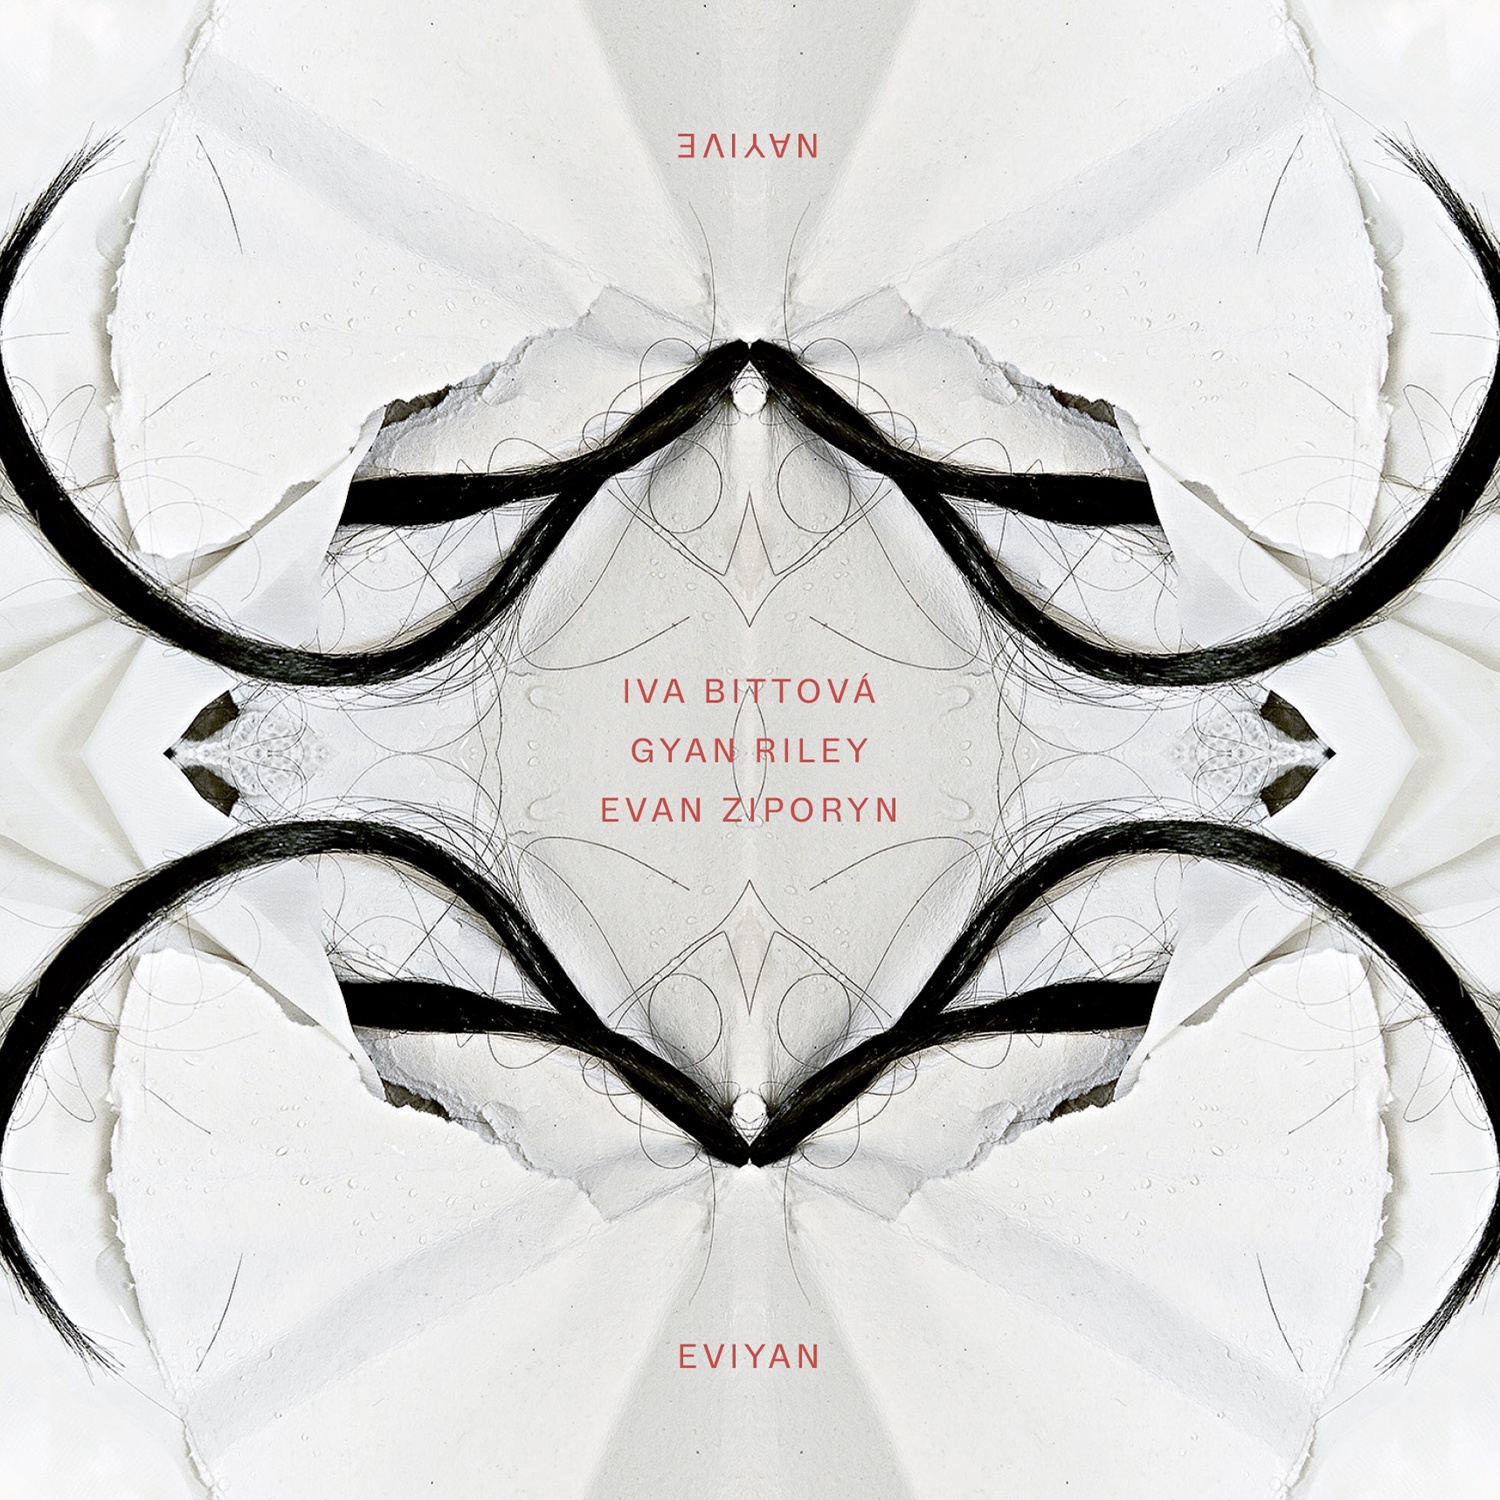 CD Shop - EVIYAN NAYIVE (I.BITTOVA, G.RILEY, E.ZIPORIN)